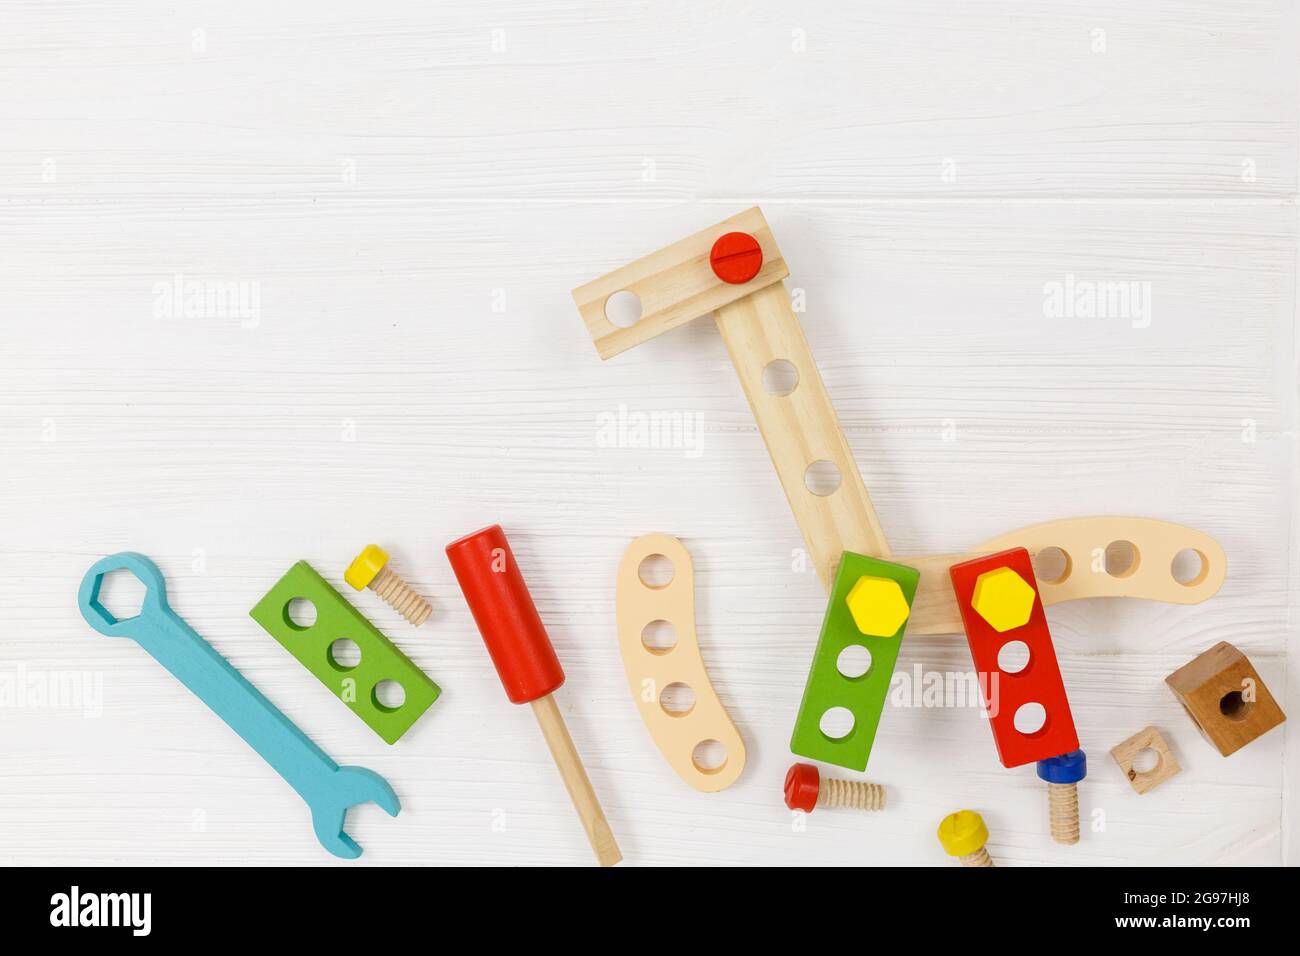 Una giraffa in legno colorato e kit da costruzione per bambini su legno. Set di attrezzi su tavolo di legno bianco. Giochi e strumenti per i bambini in età prescolare o in asilo Foto Stock